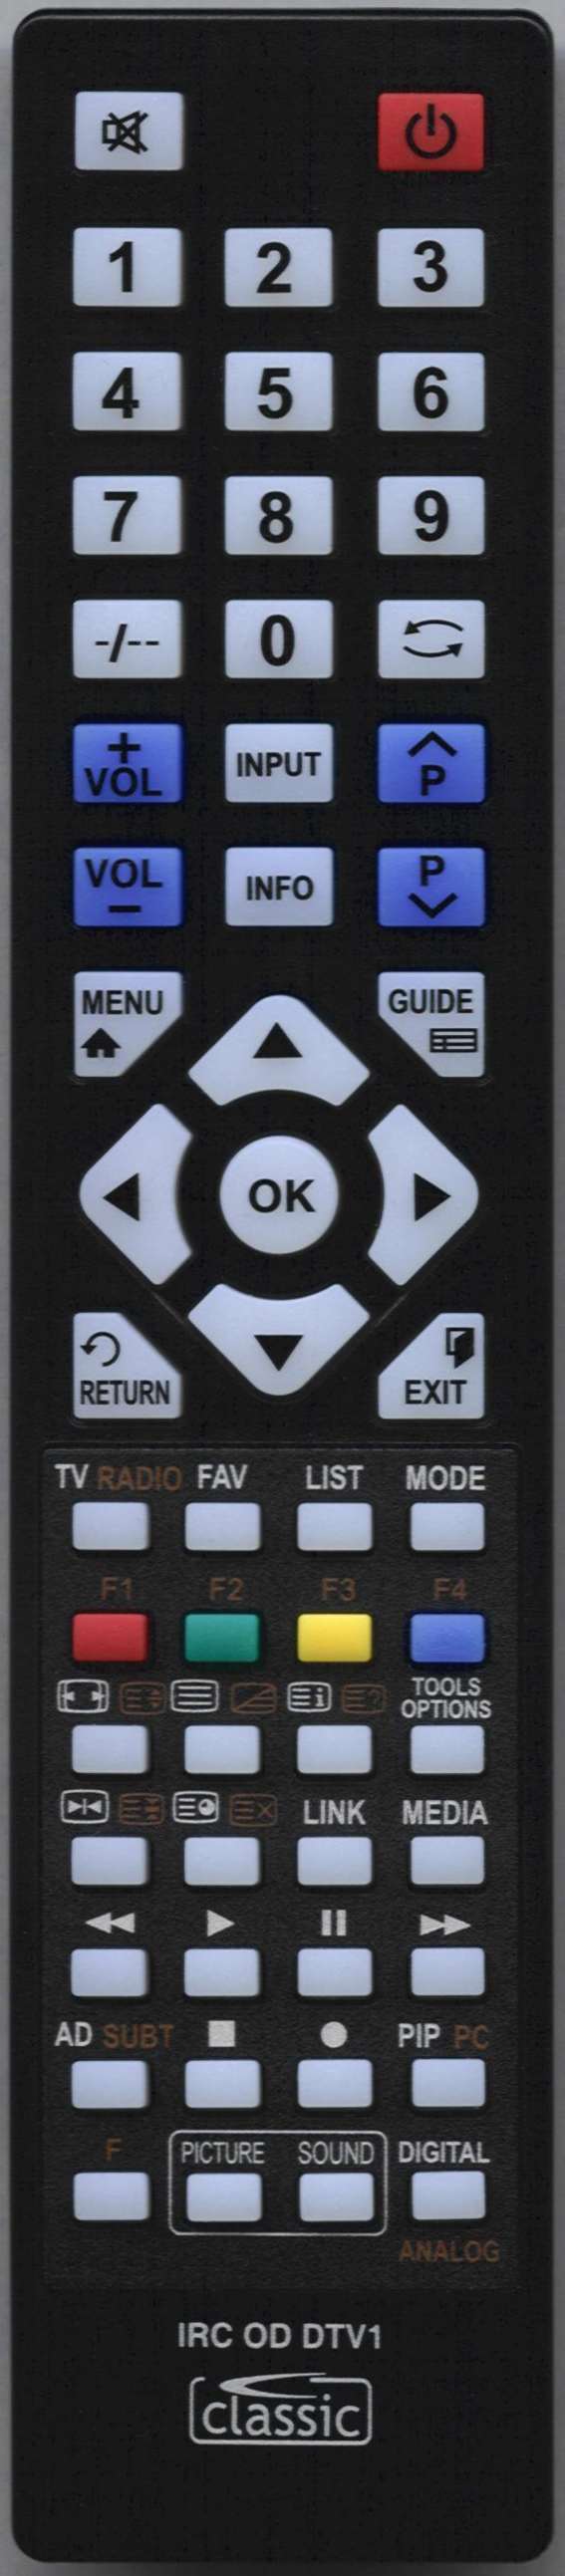 VISION PLUS X156-44E Remote Control